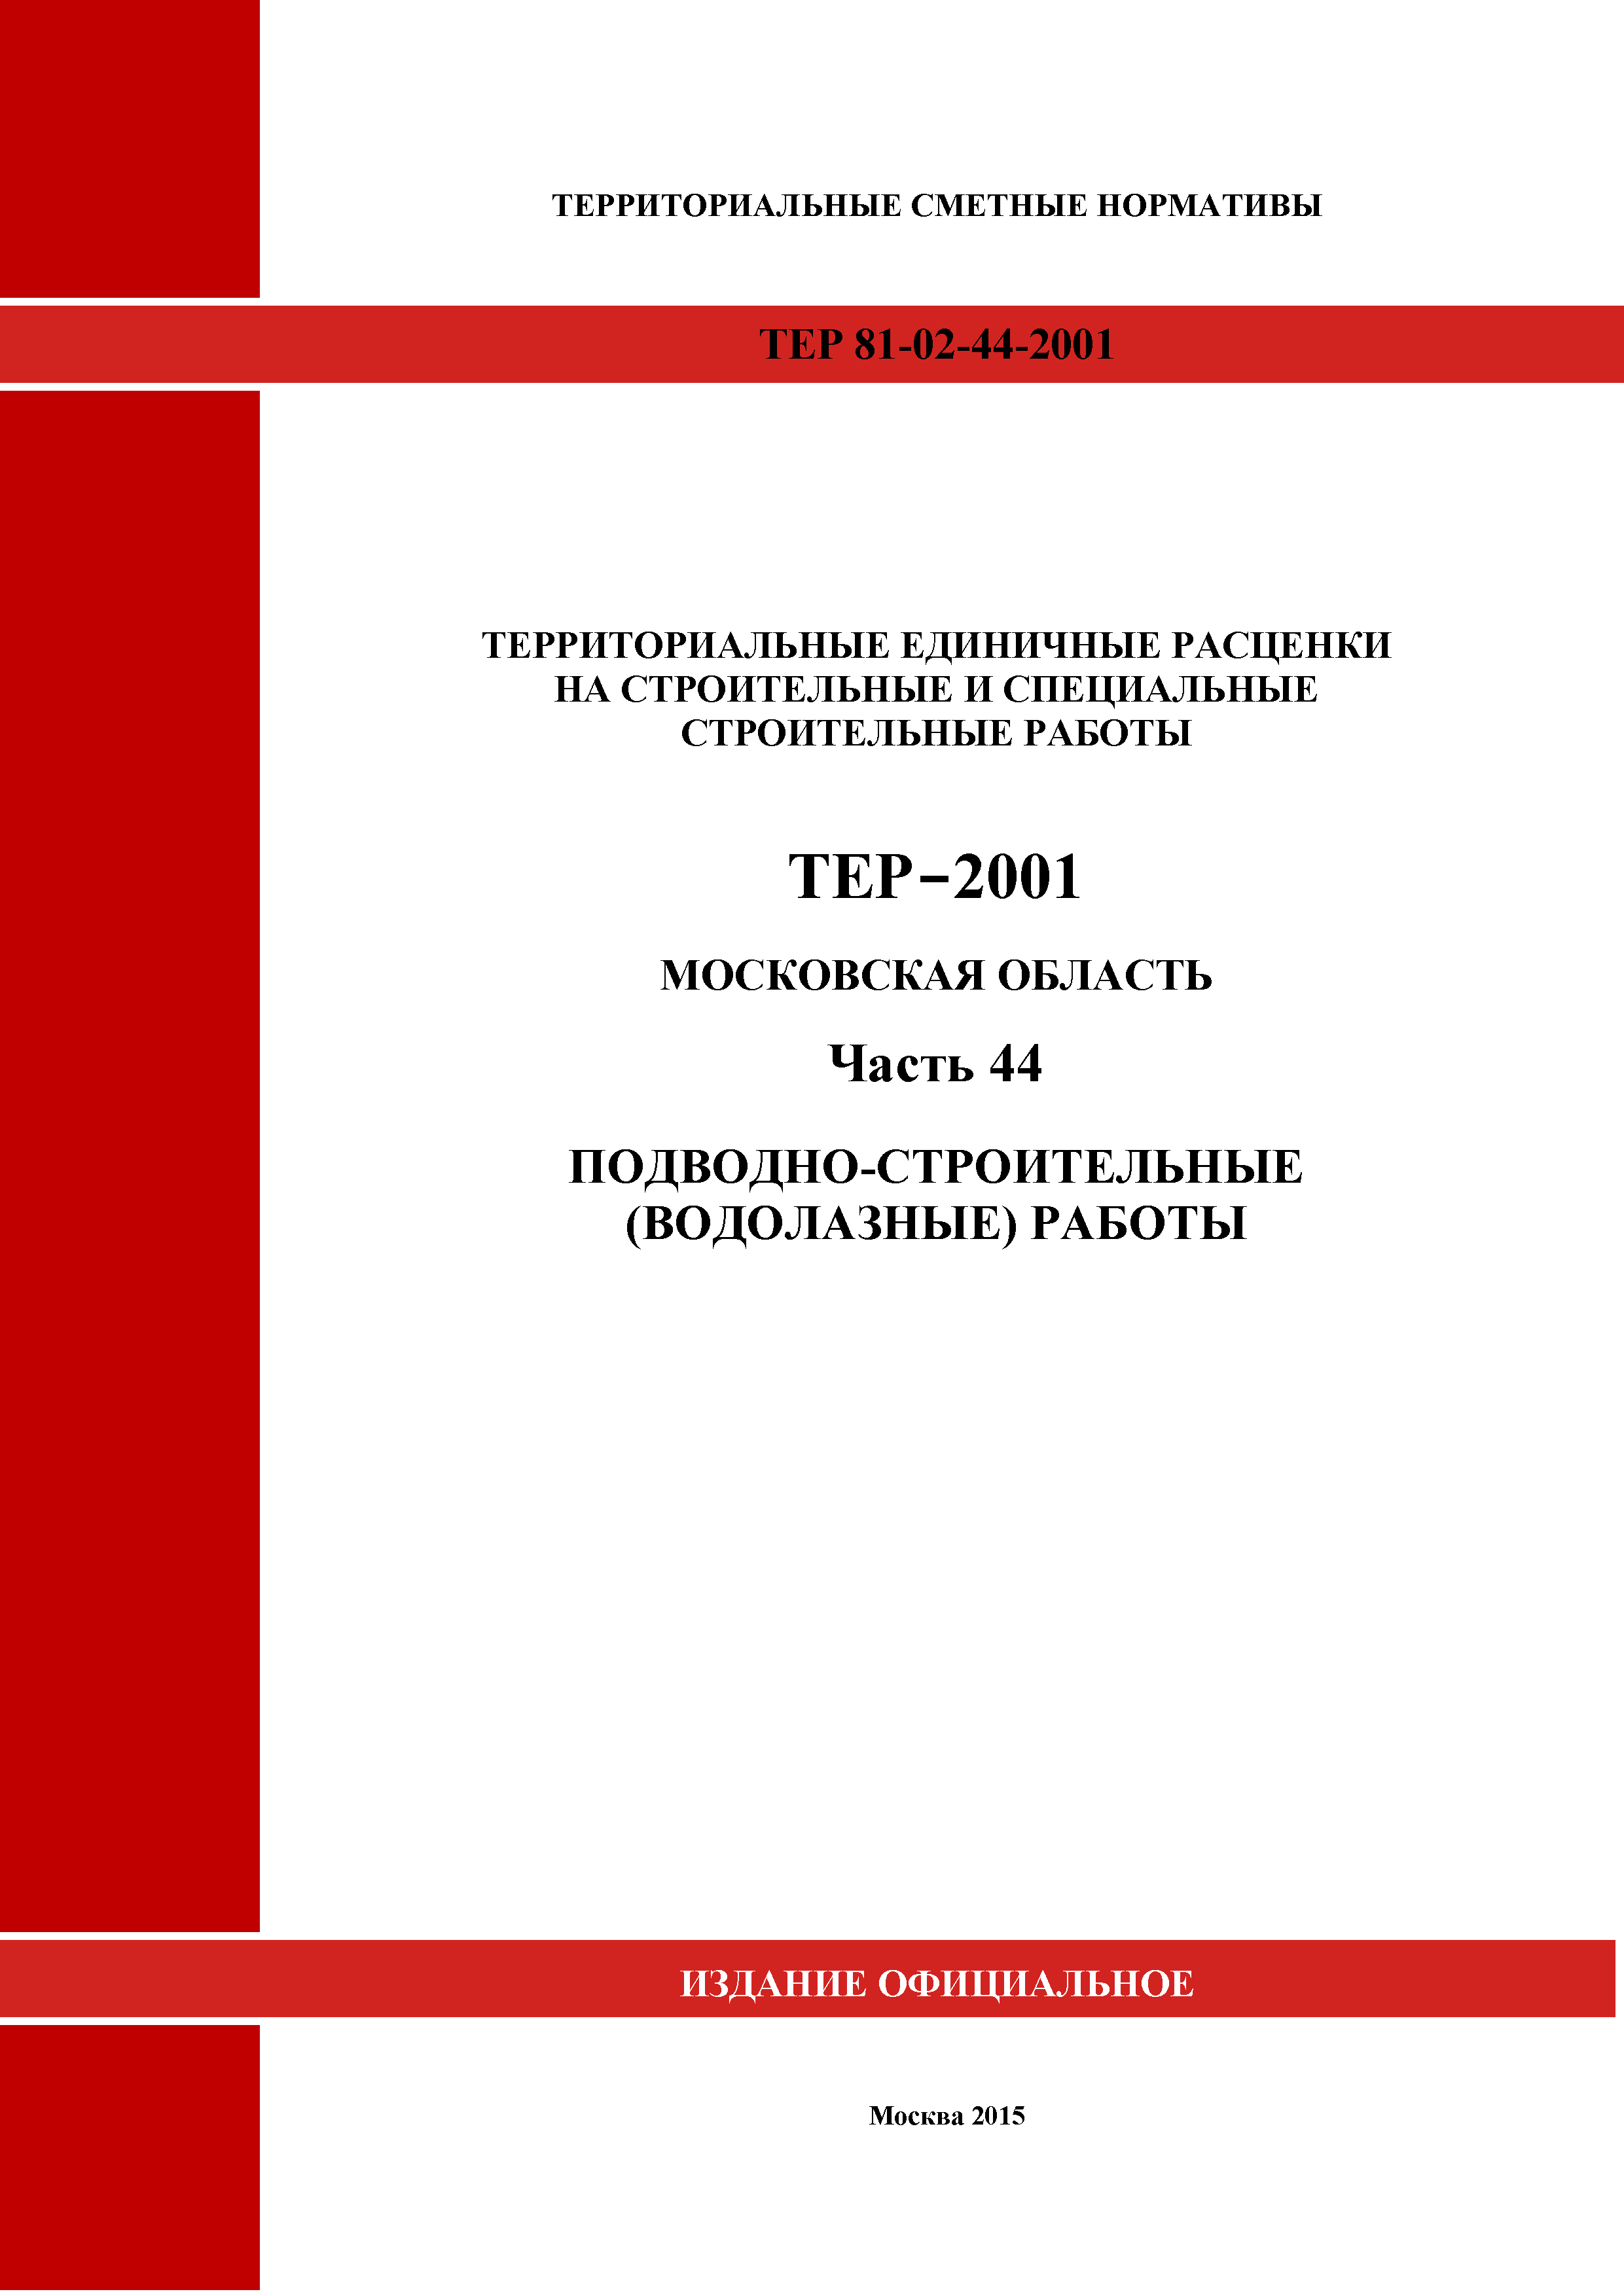 ТЕР 44-2001 Московской области